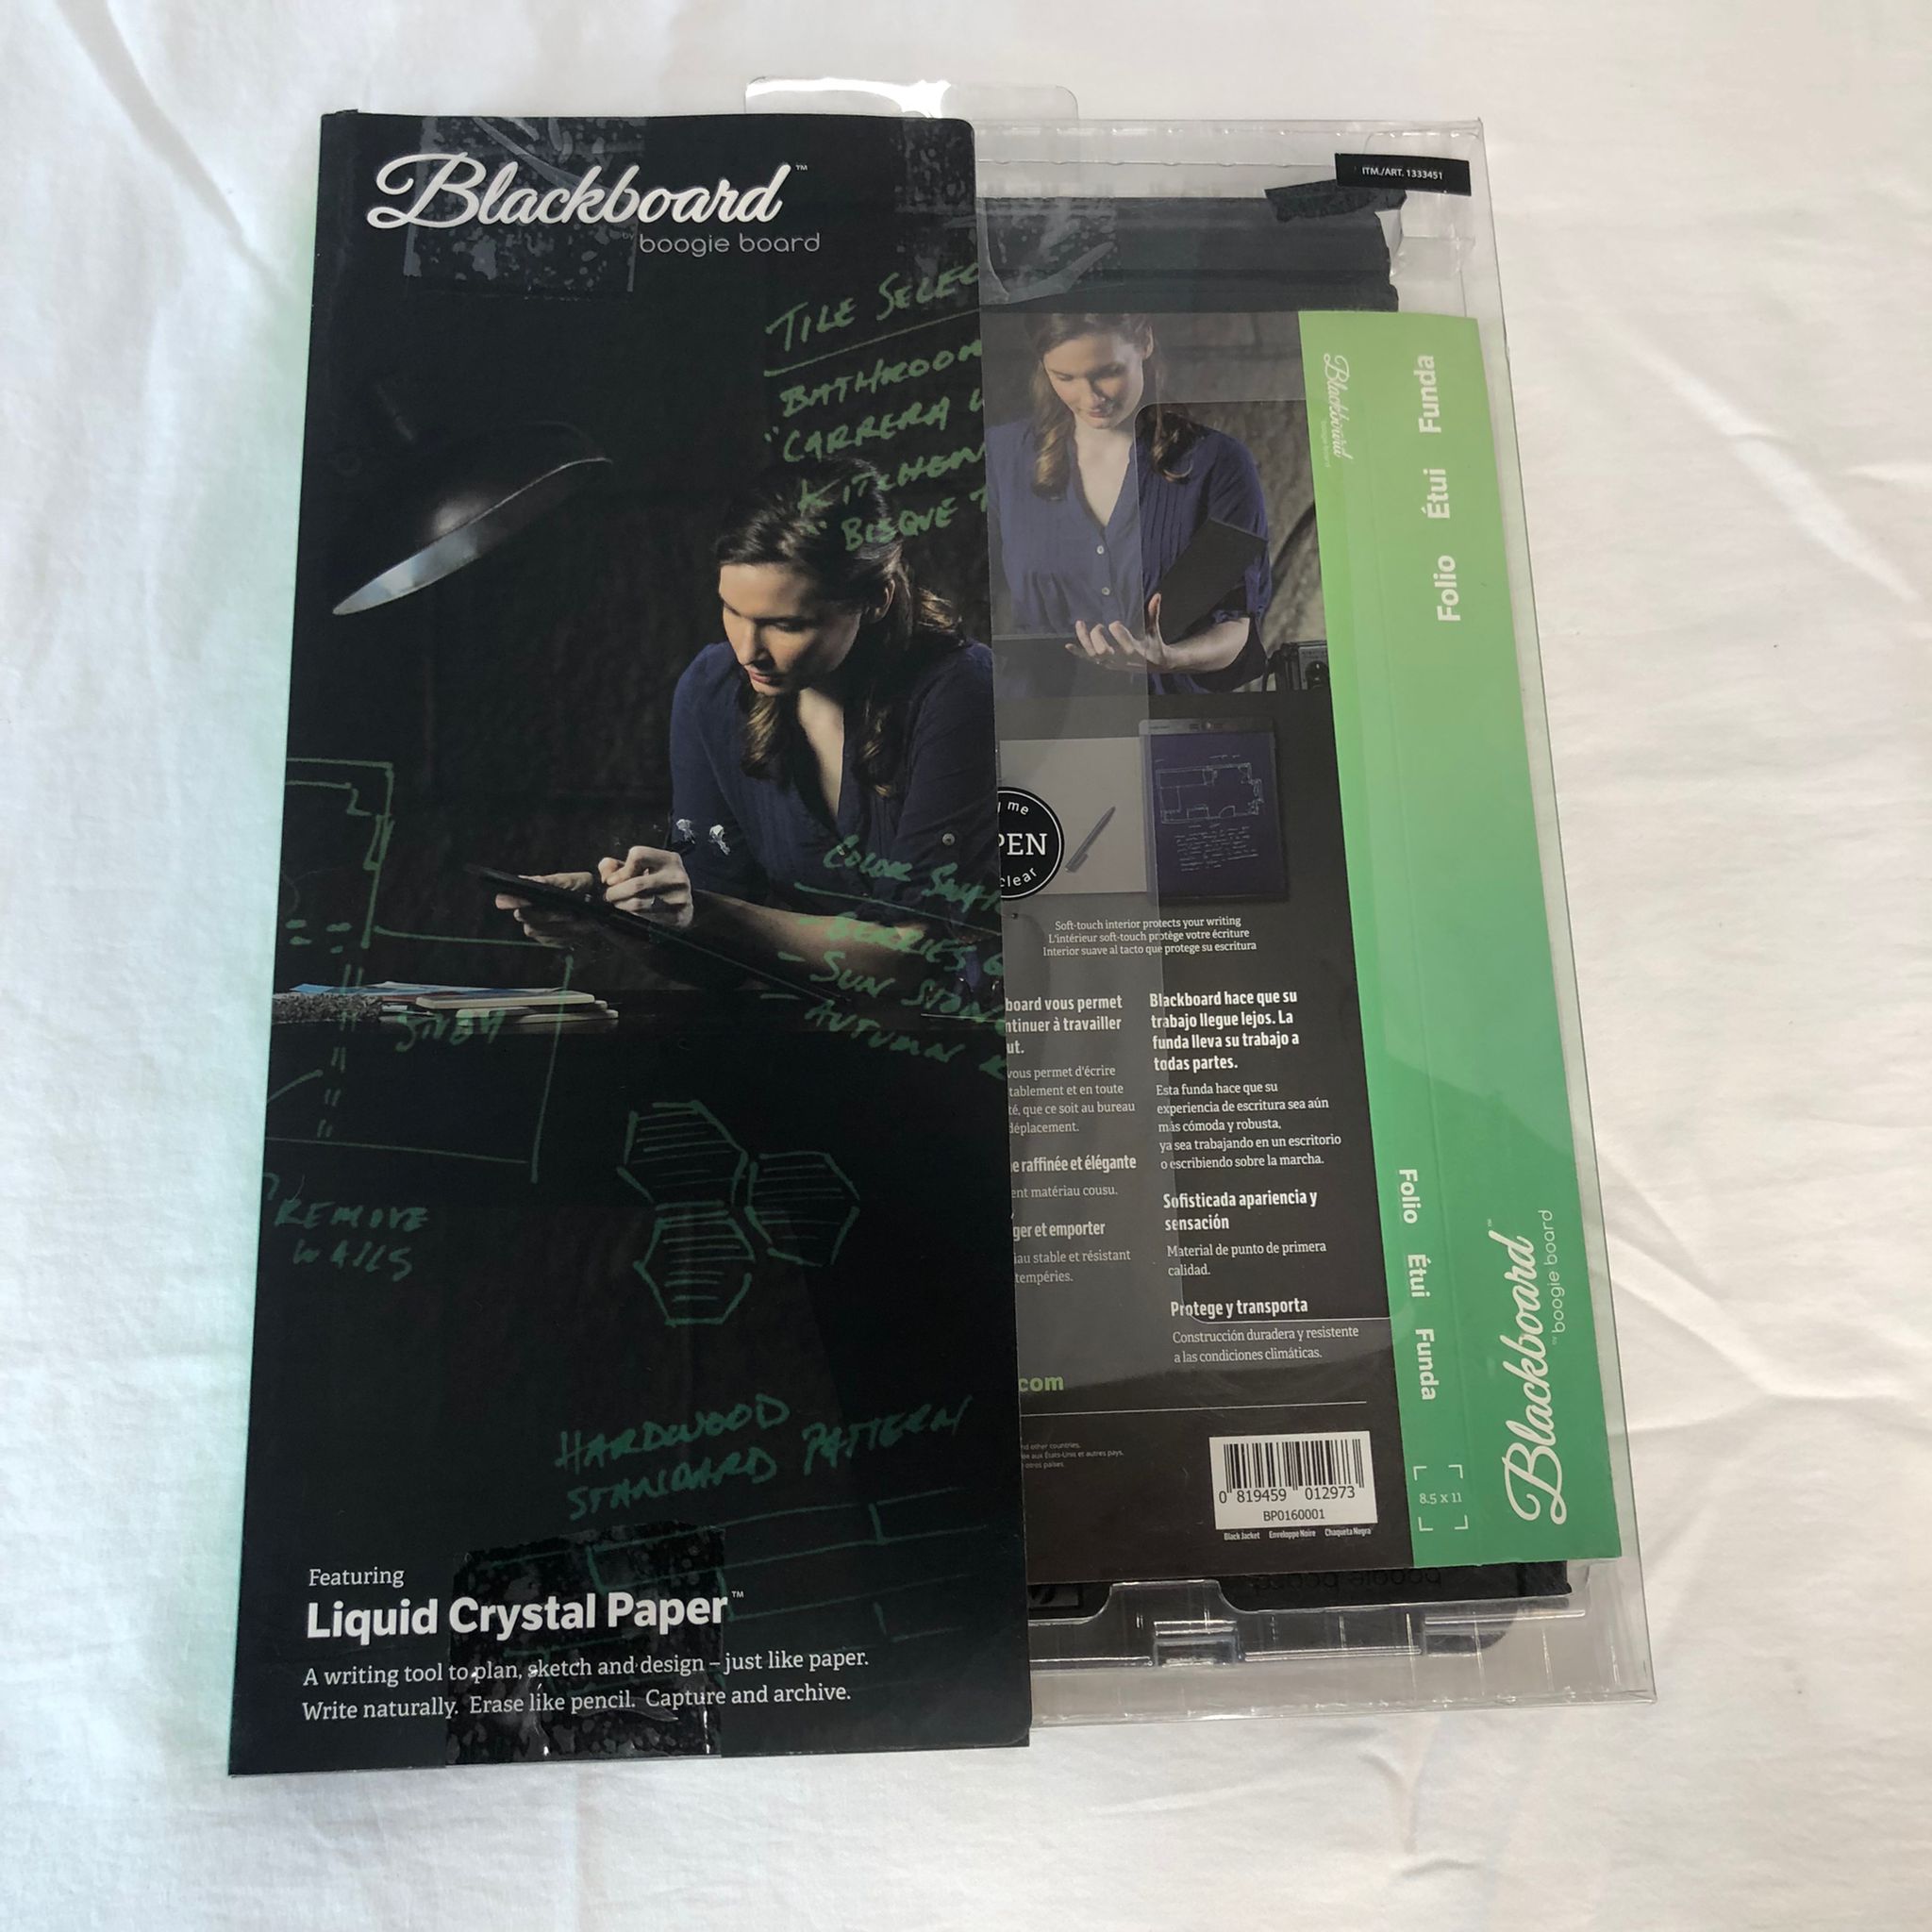 Boogie Board Blackboard eWriter and Folio Bundle